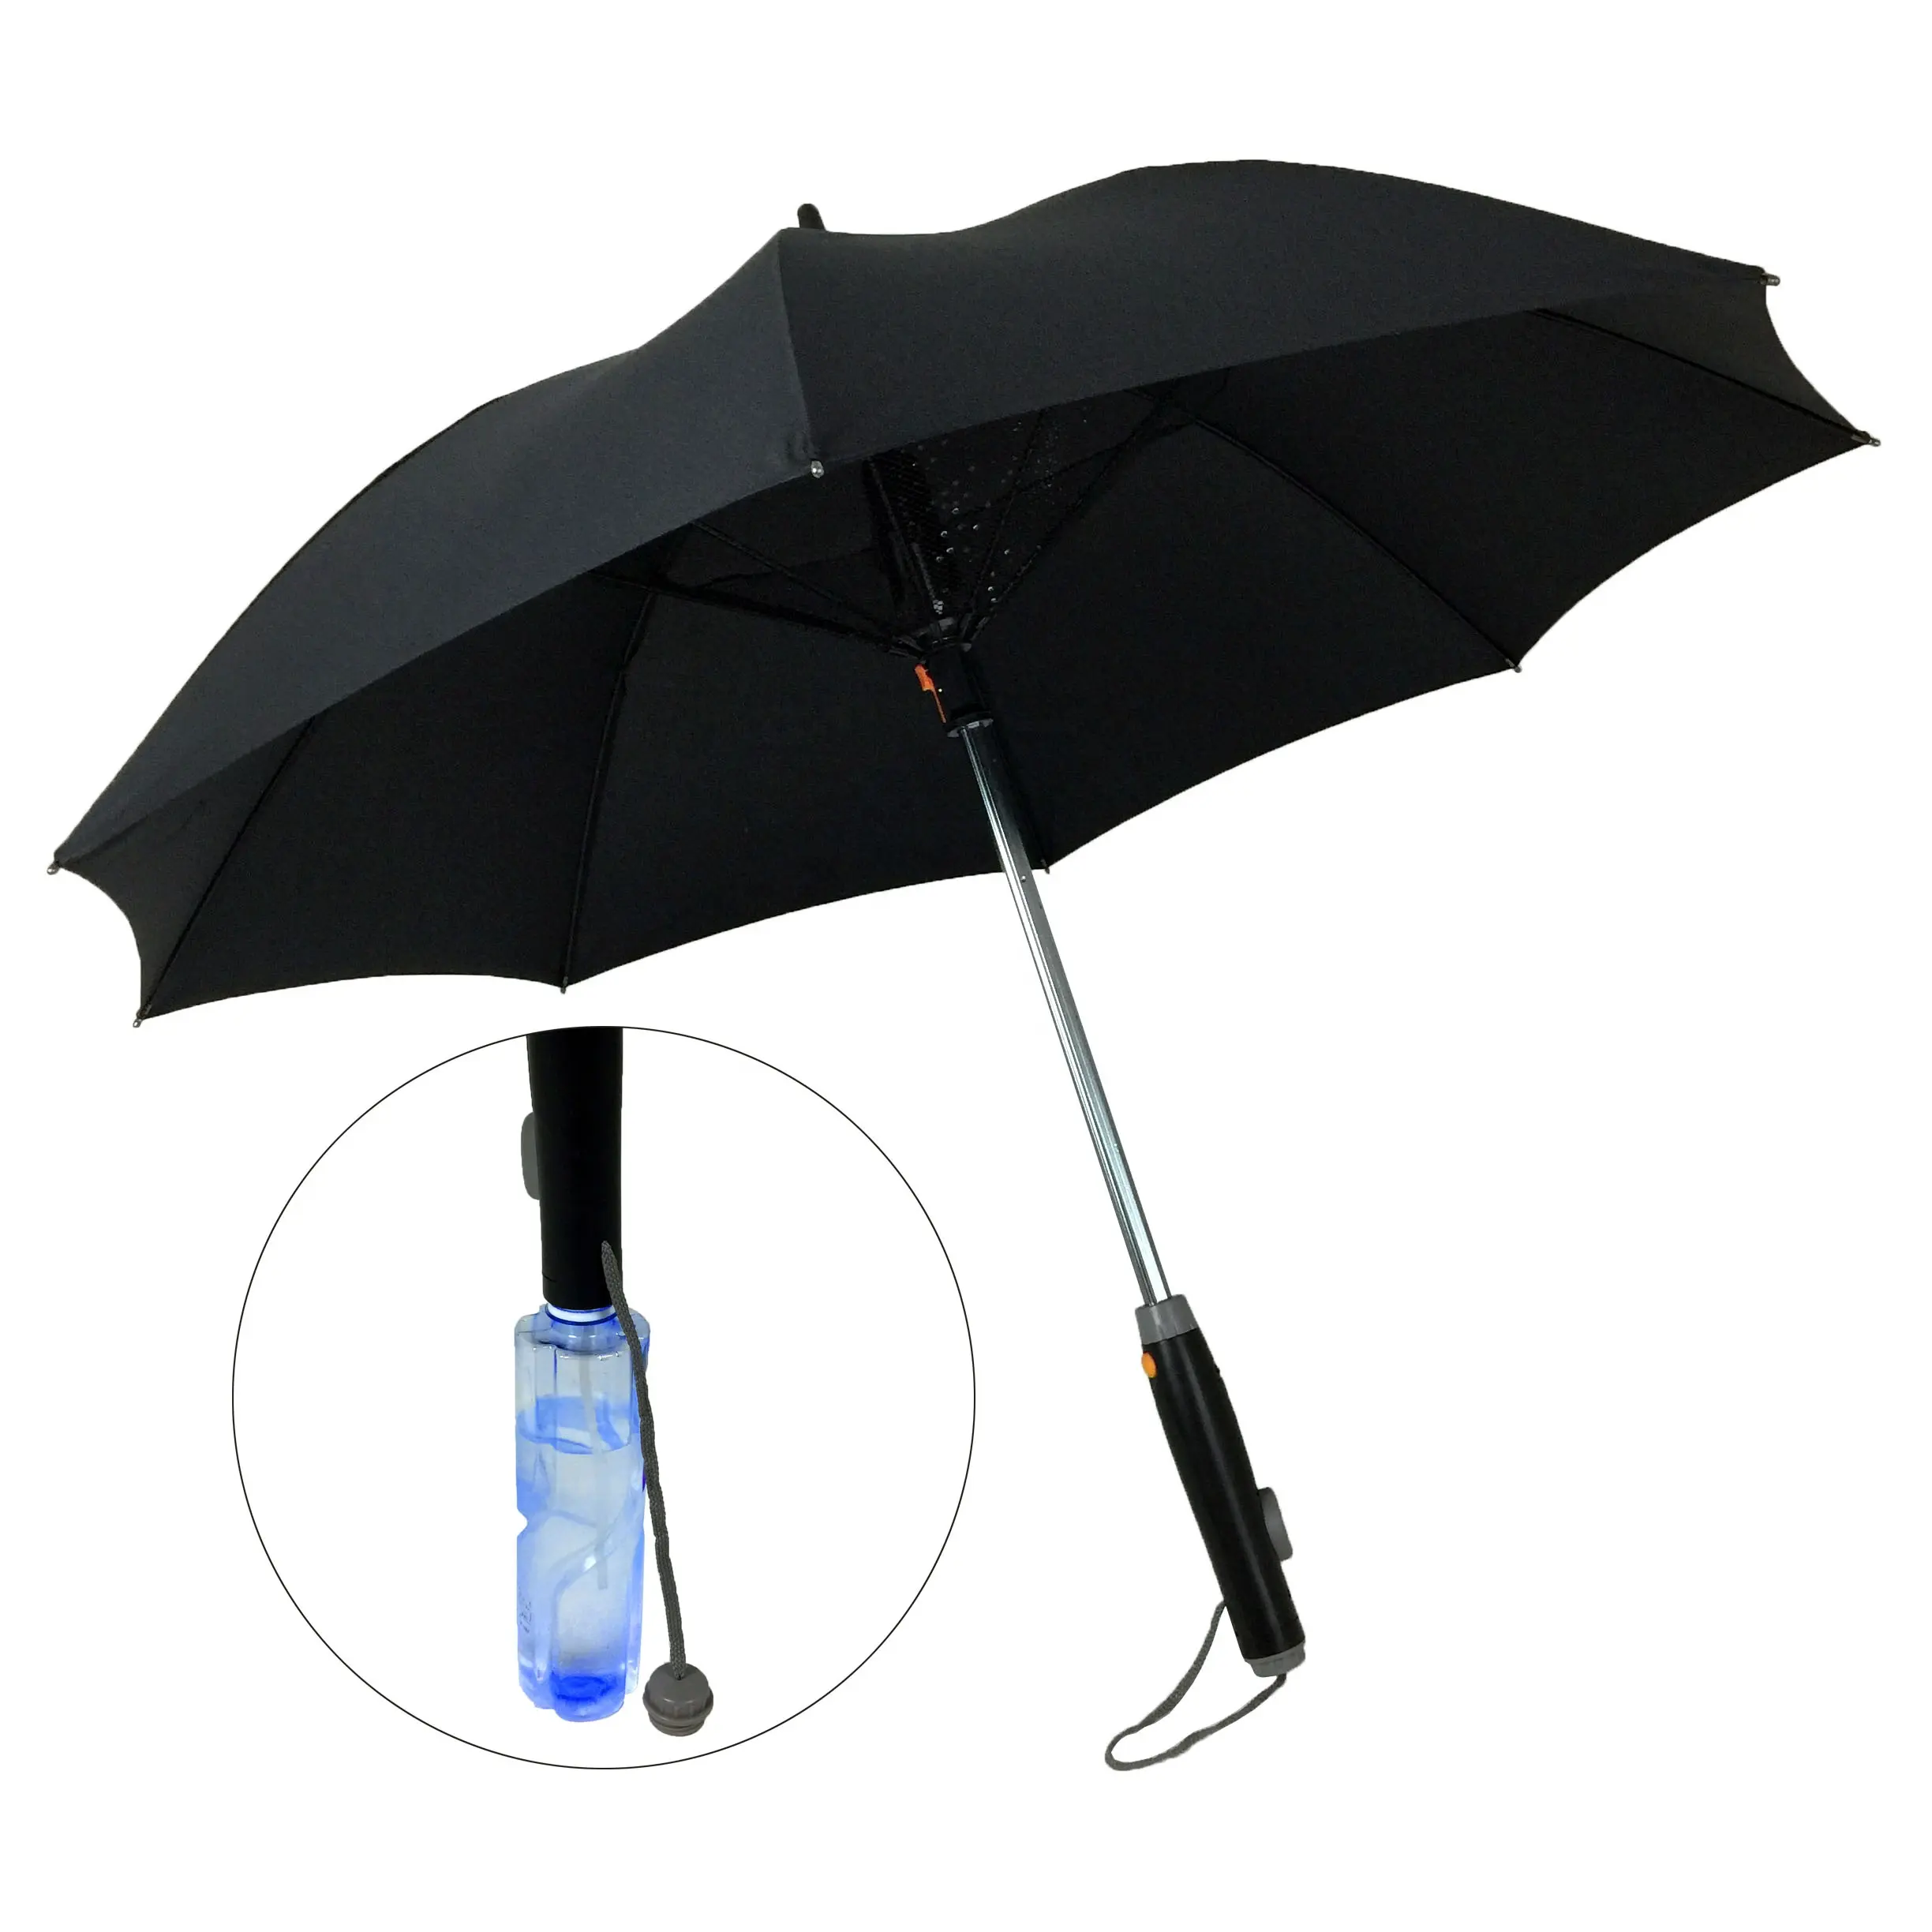 Açık sis soğutma fanı şemsiye Fan ve su püskürtme fonksiyonu